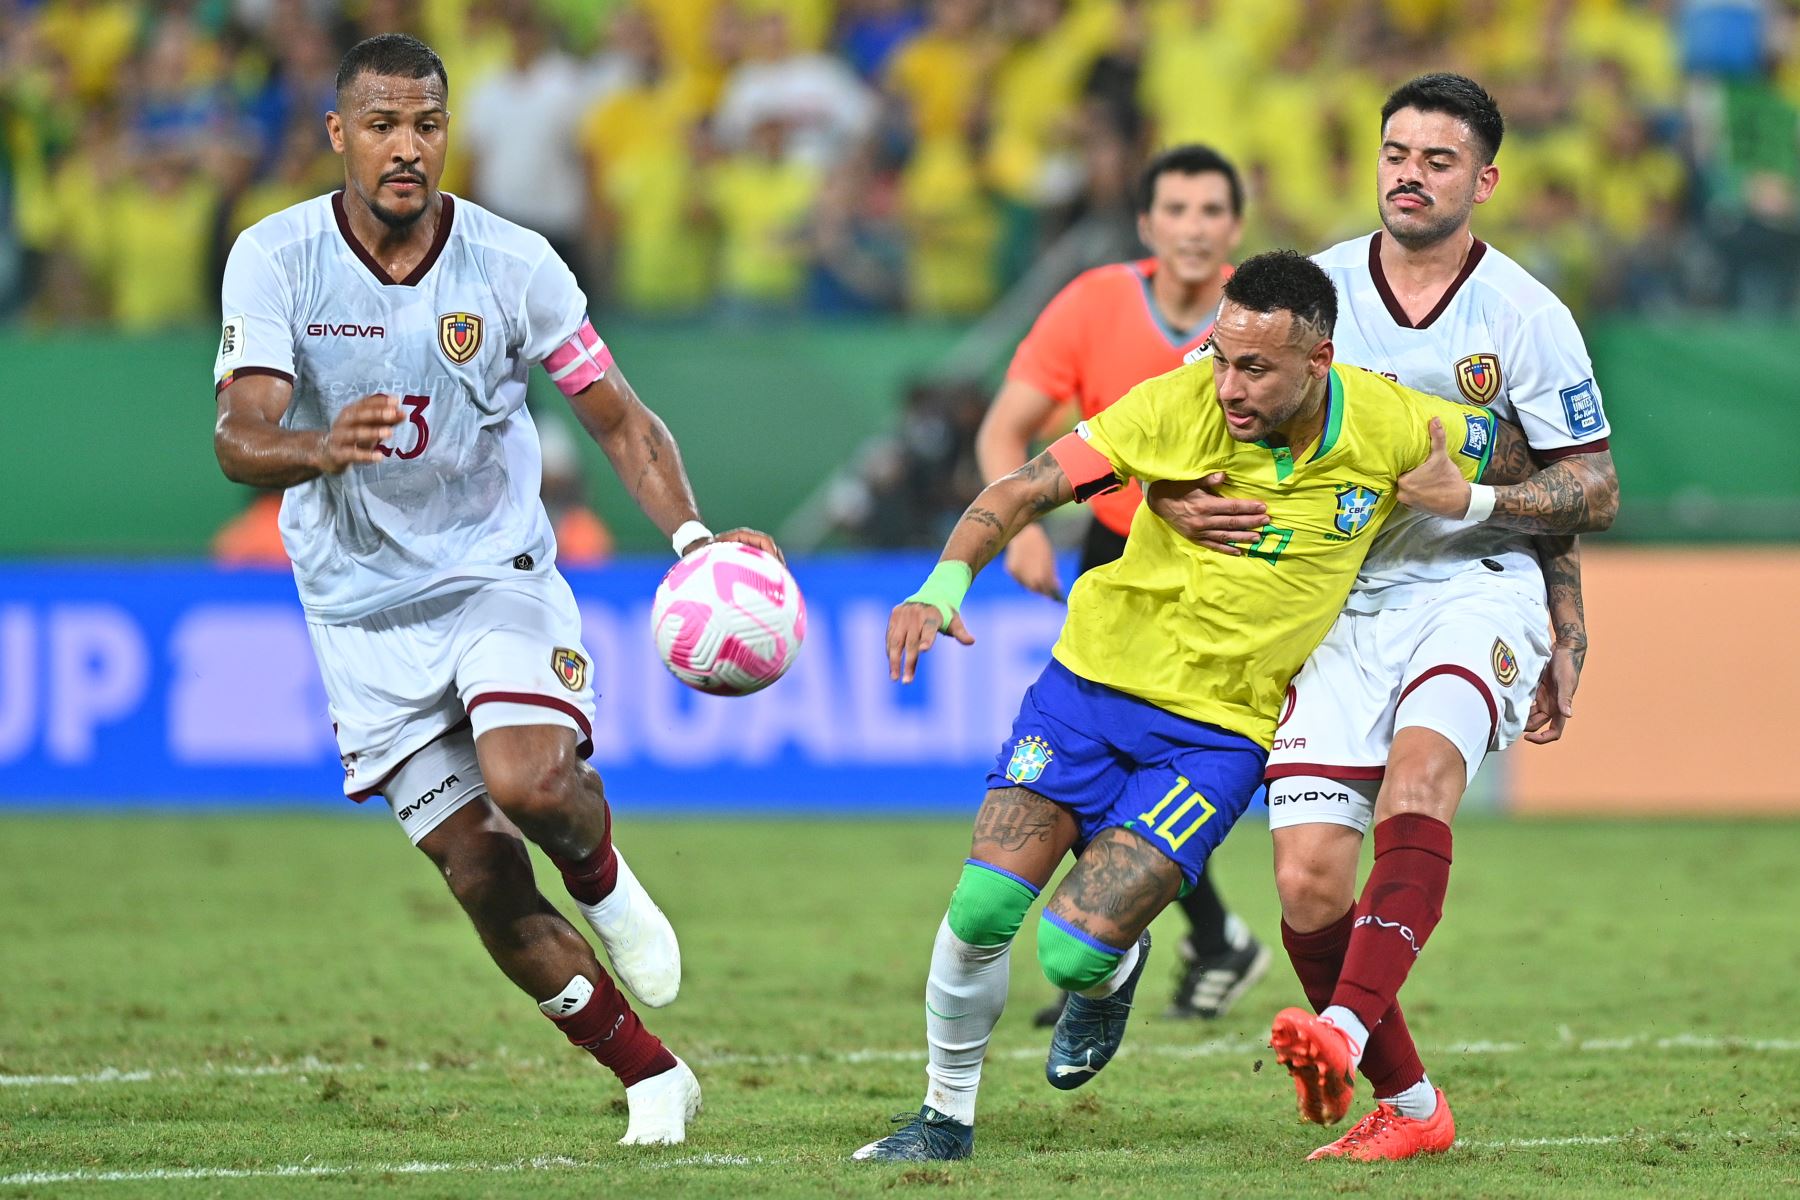 Venezuela consigue un empate histórico de 1-1 en su encuentro contra Brasil en las eliminatorias para el Mundial 2026